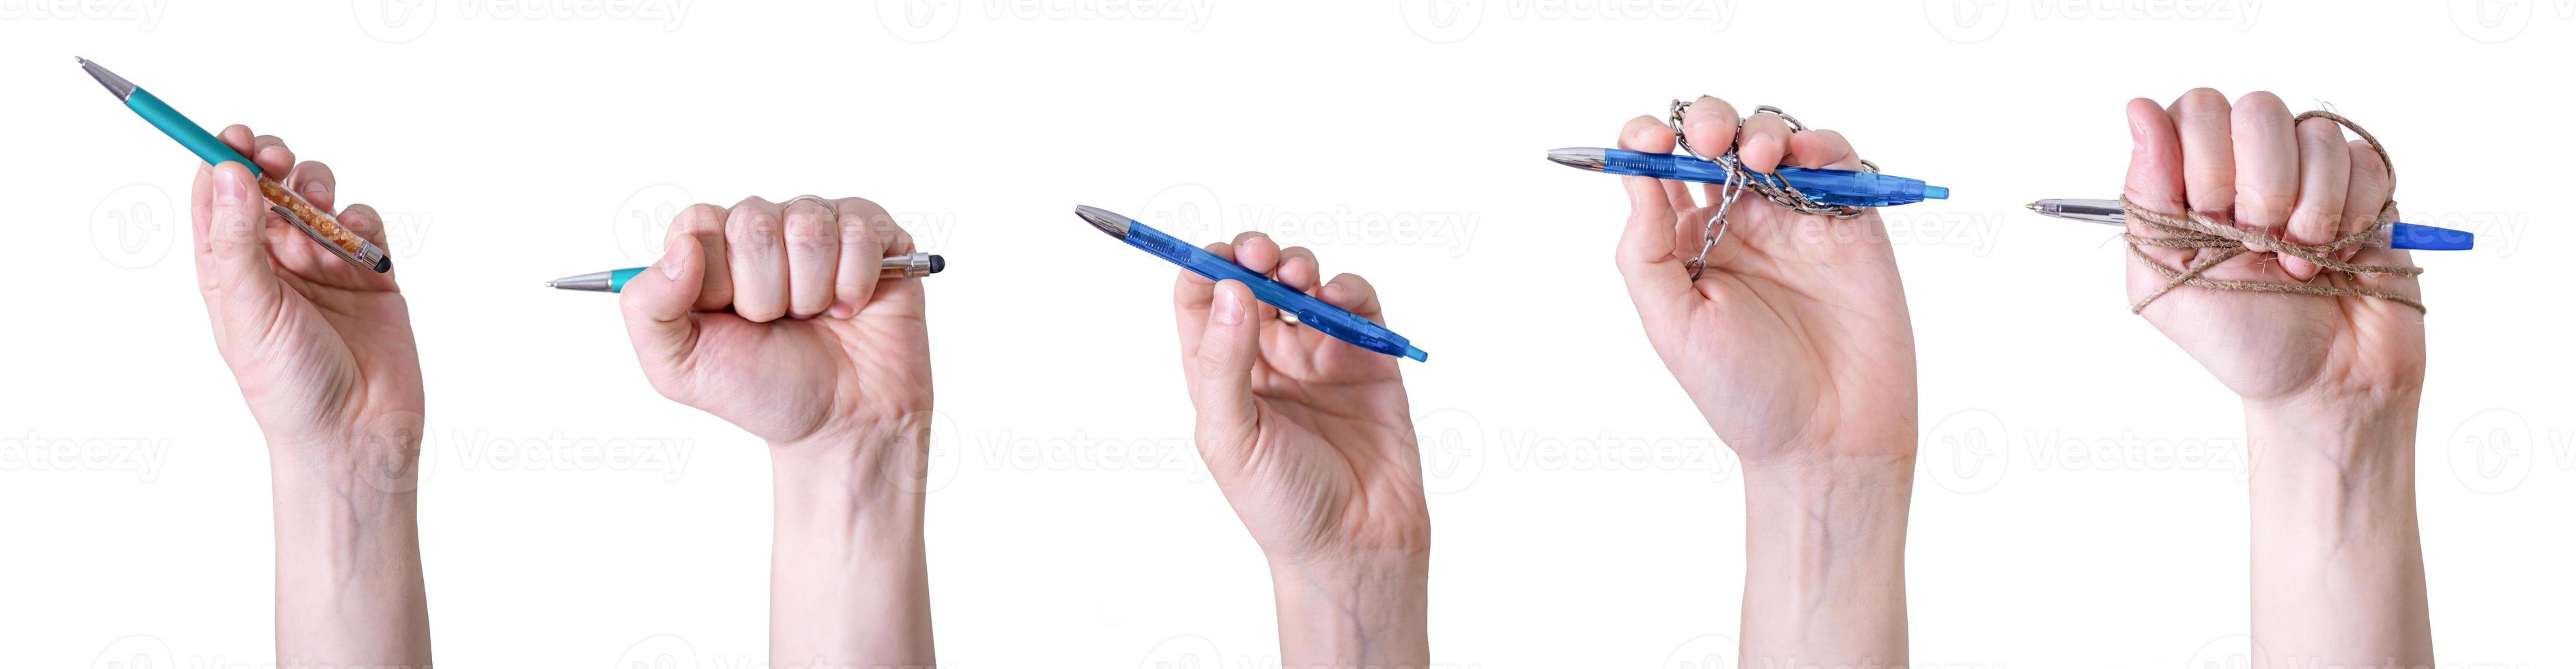 un collage di mani che tengono le penne su uno sfondo bianco. foto